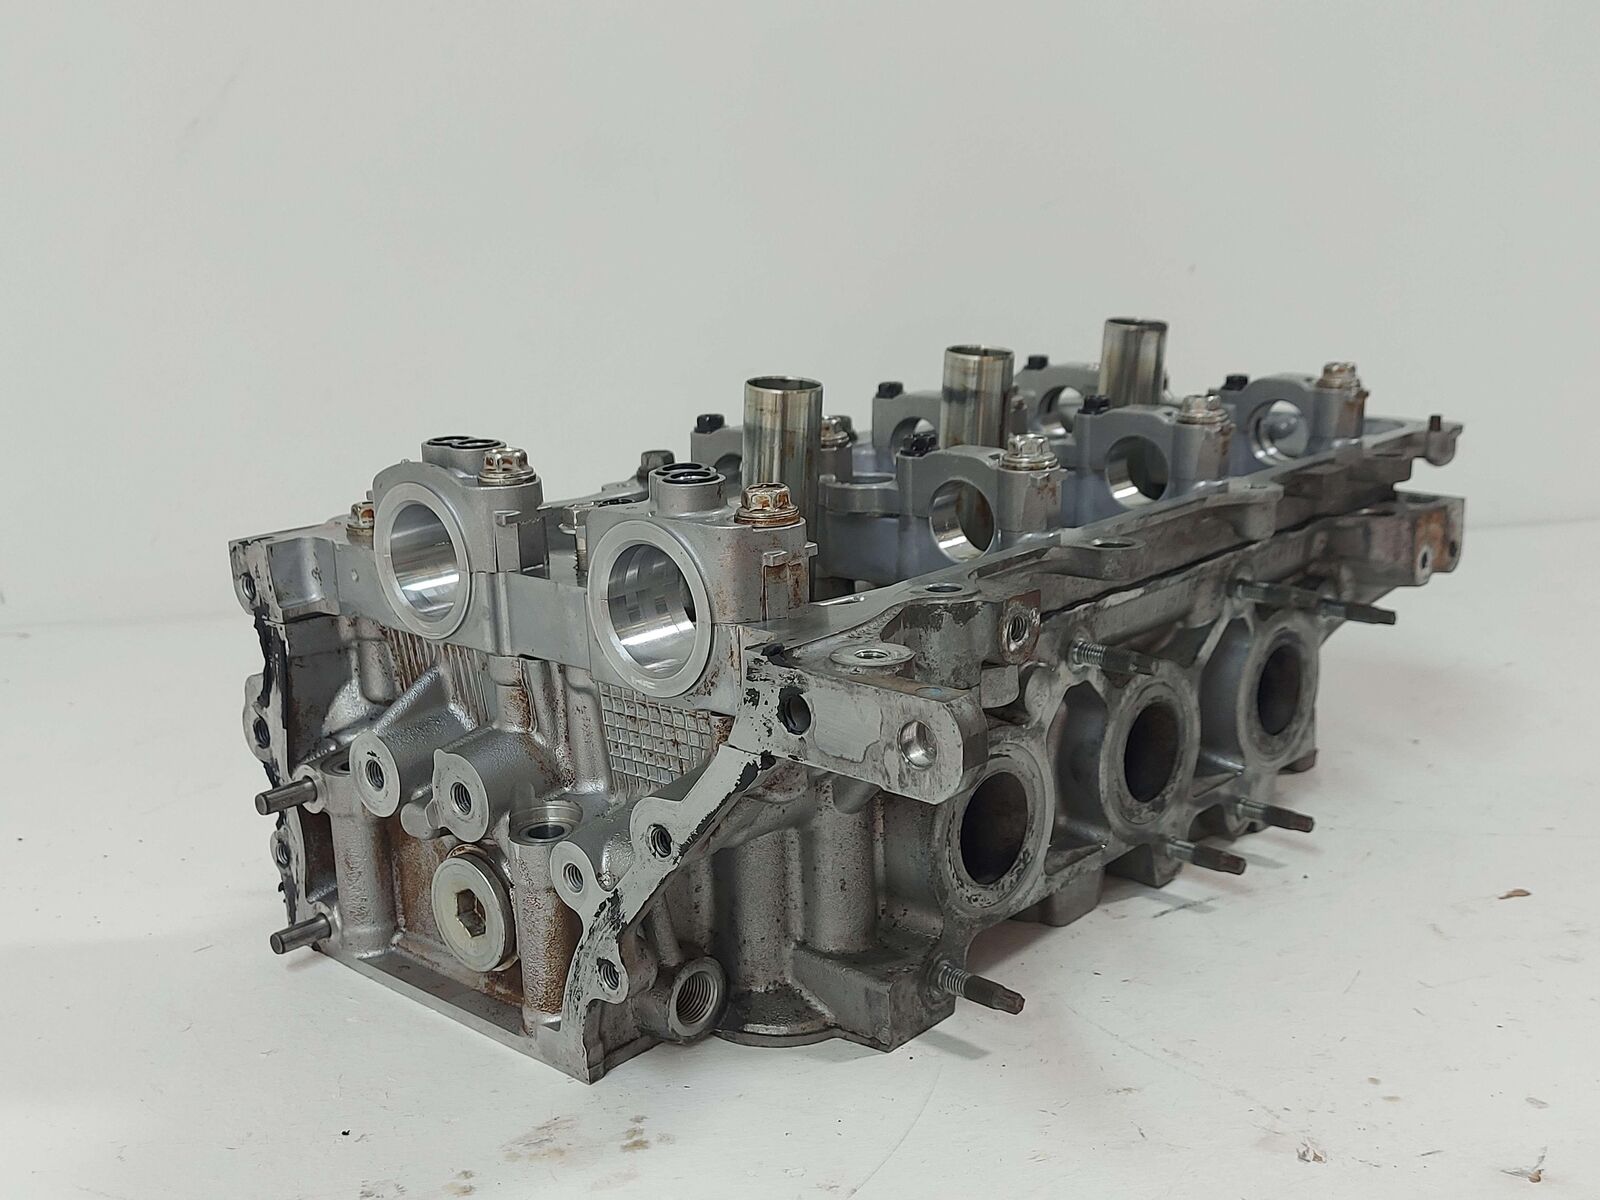 08-16 Toyota Highlander 3.5L Front LH Left Engine Cylinder Head 96K KMS *Notes!*